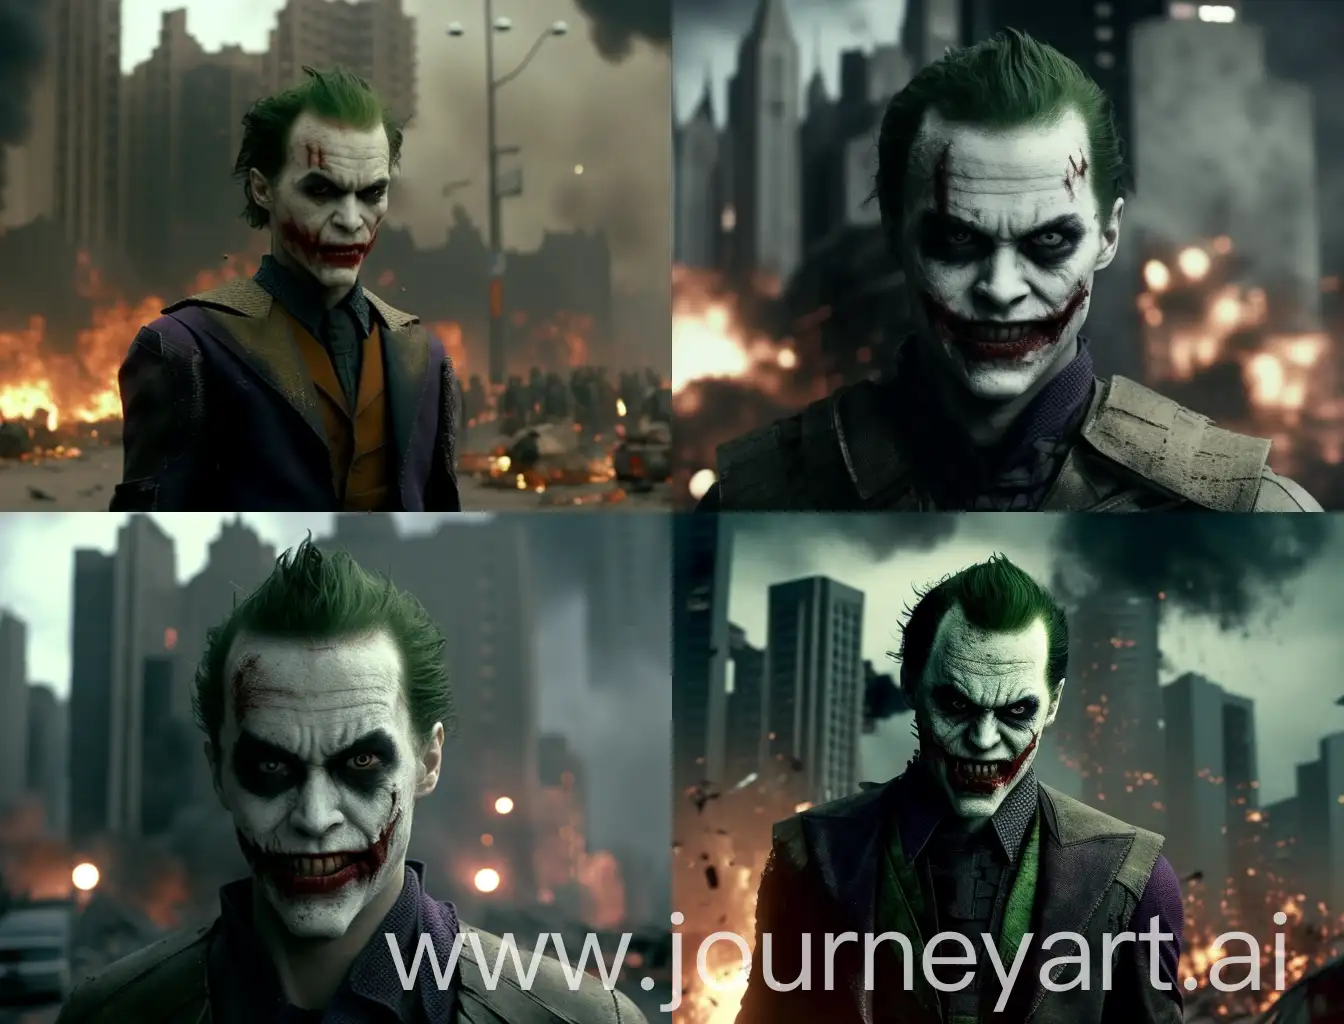 Eerie-Joker-Stands-Amidst-Zombie-Apocalypse-in-Cinematic-Mode